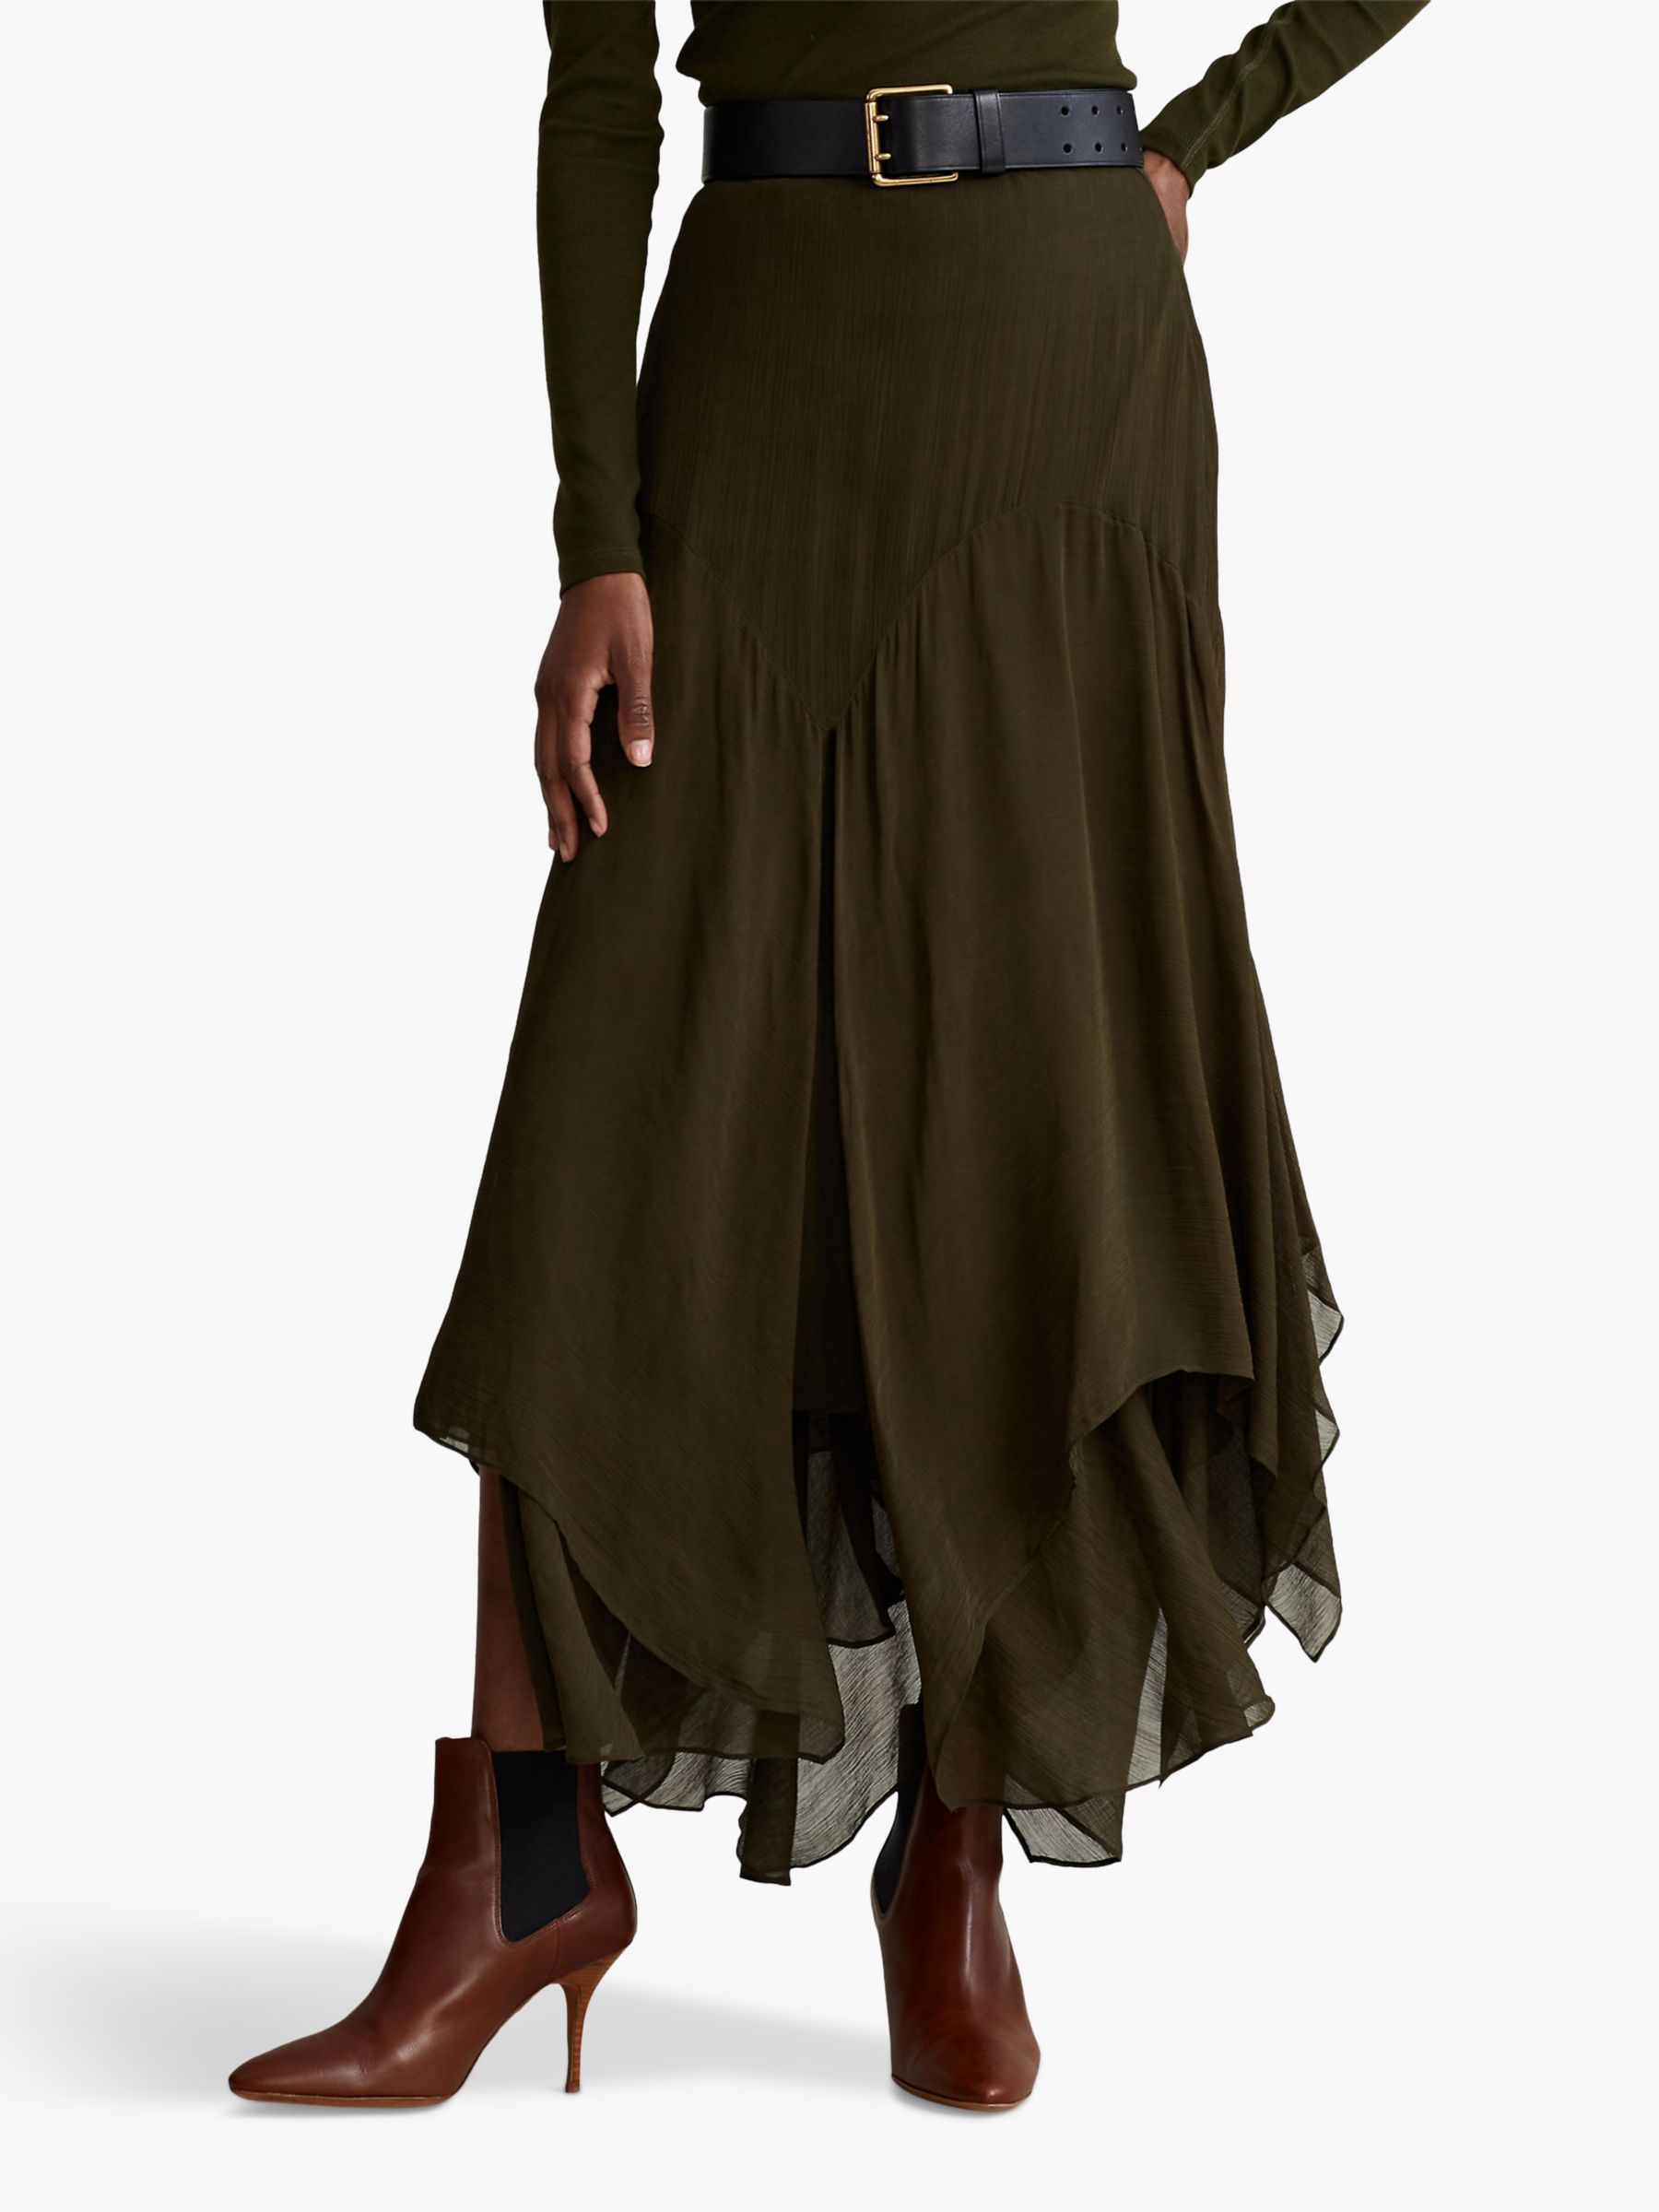 Polo Ralph Lauren Crinkled Handkerchief Midi Skirt, Dark Loden